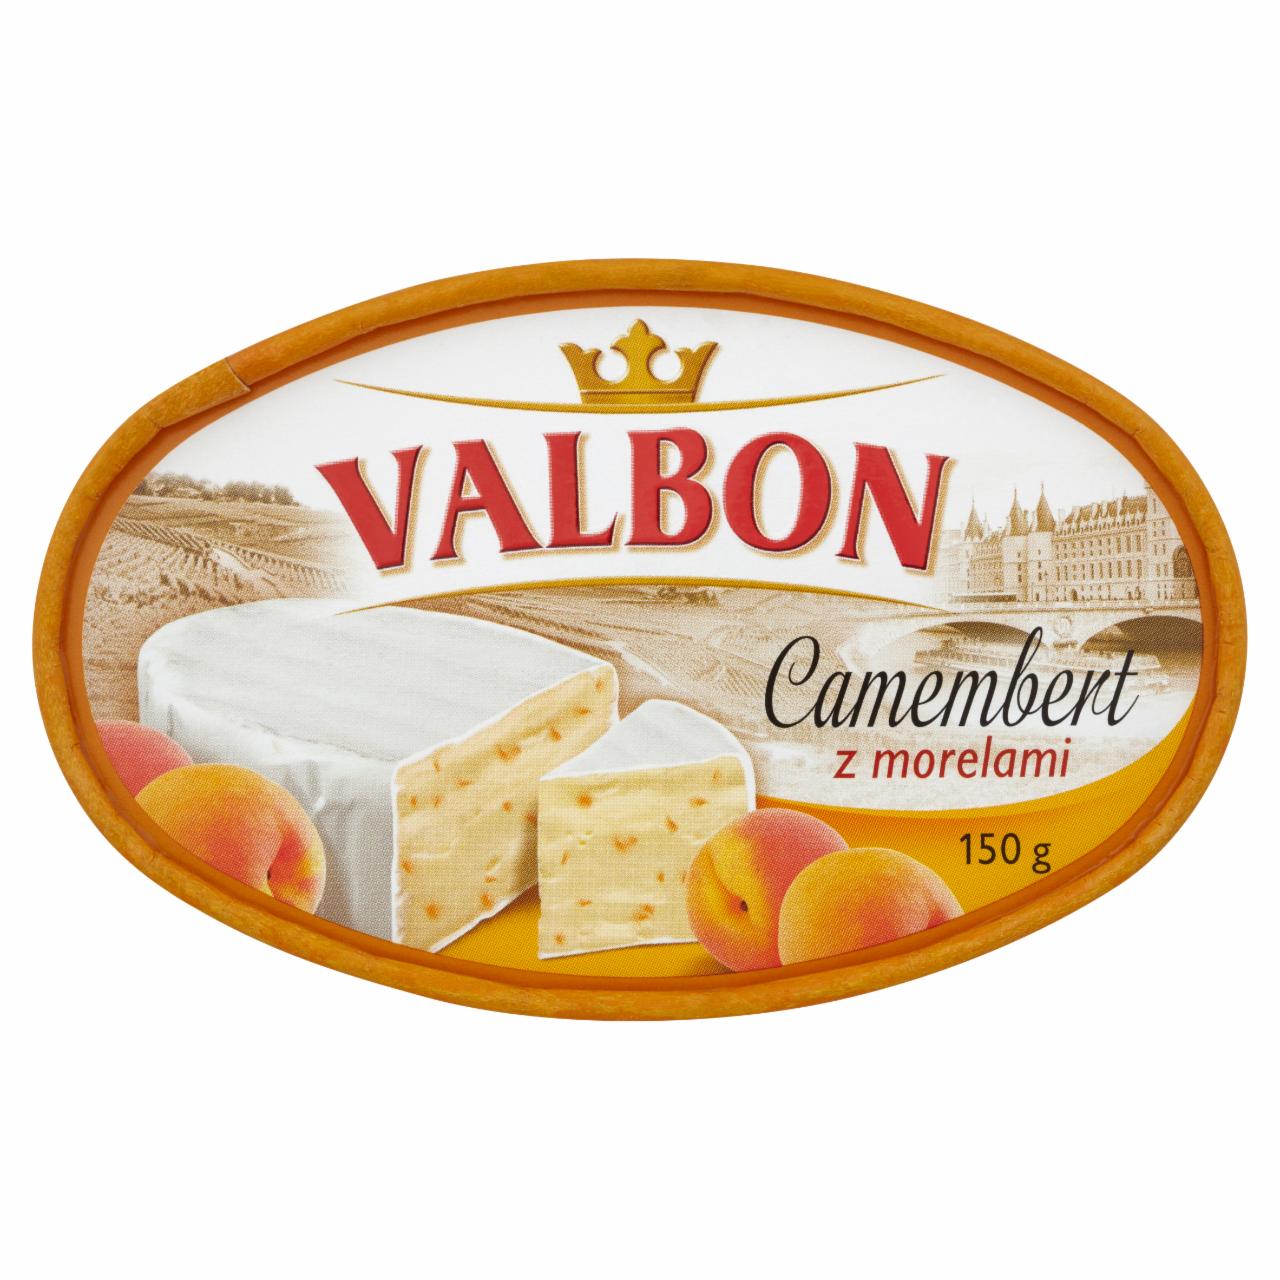 Zdjęcia - Valbon Camembert z morelami 150 g